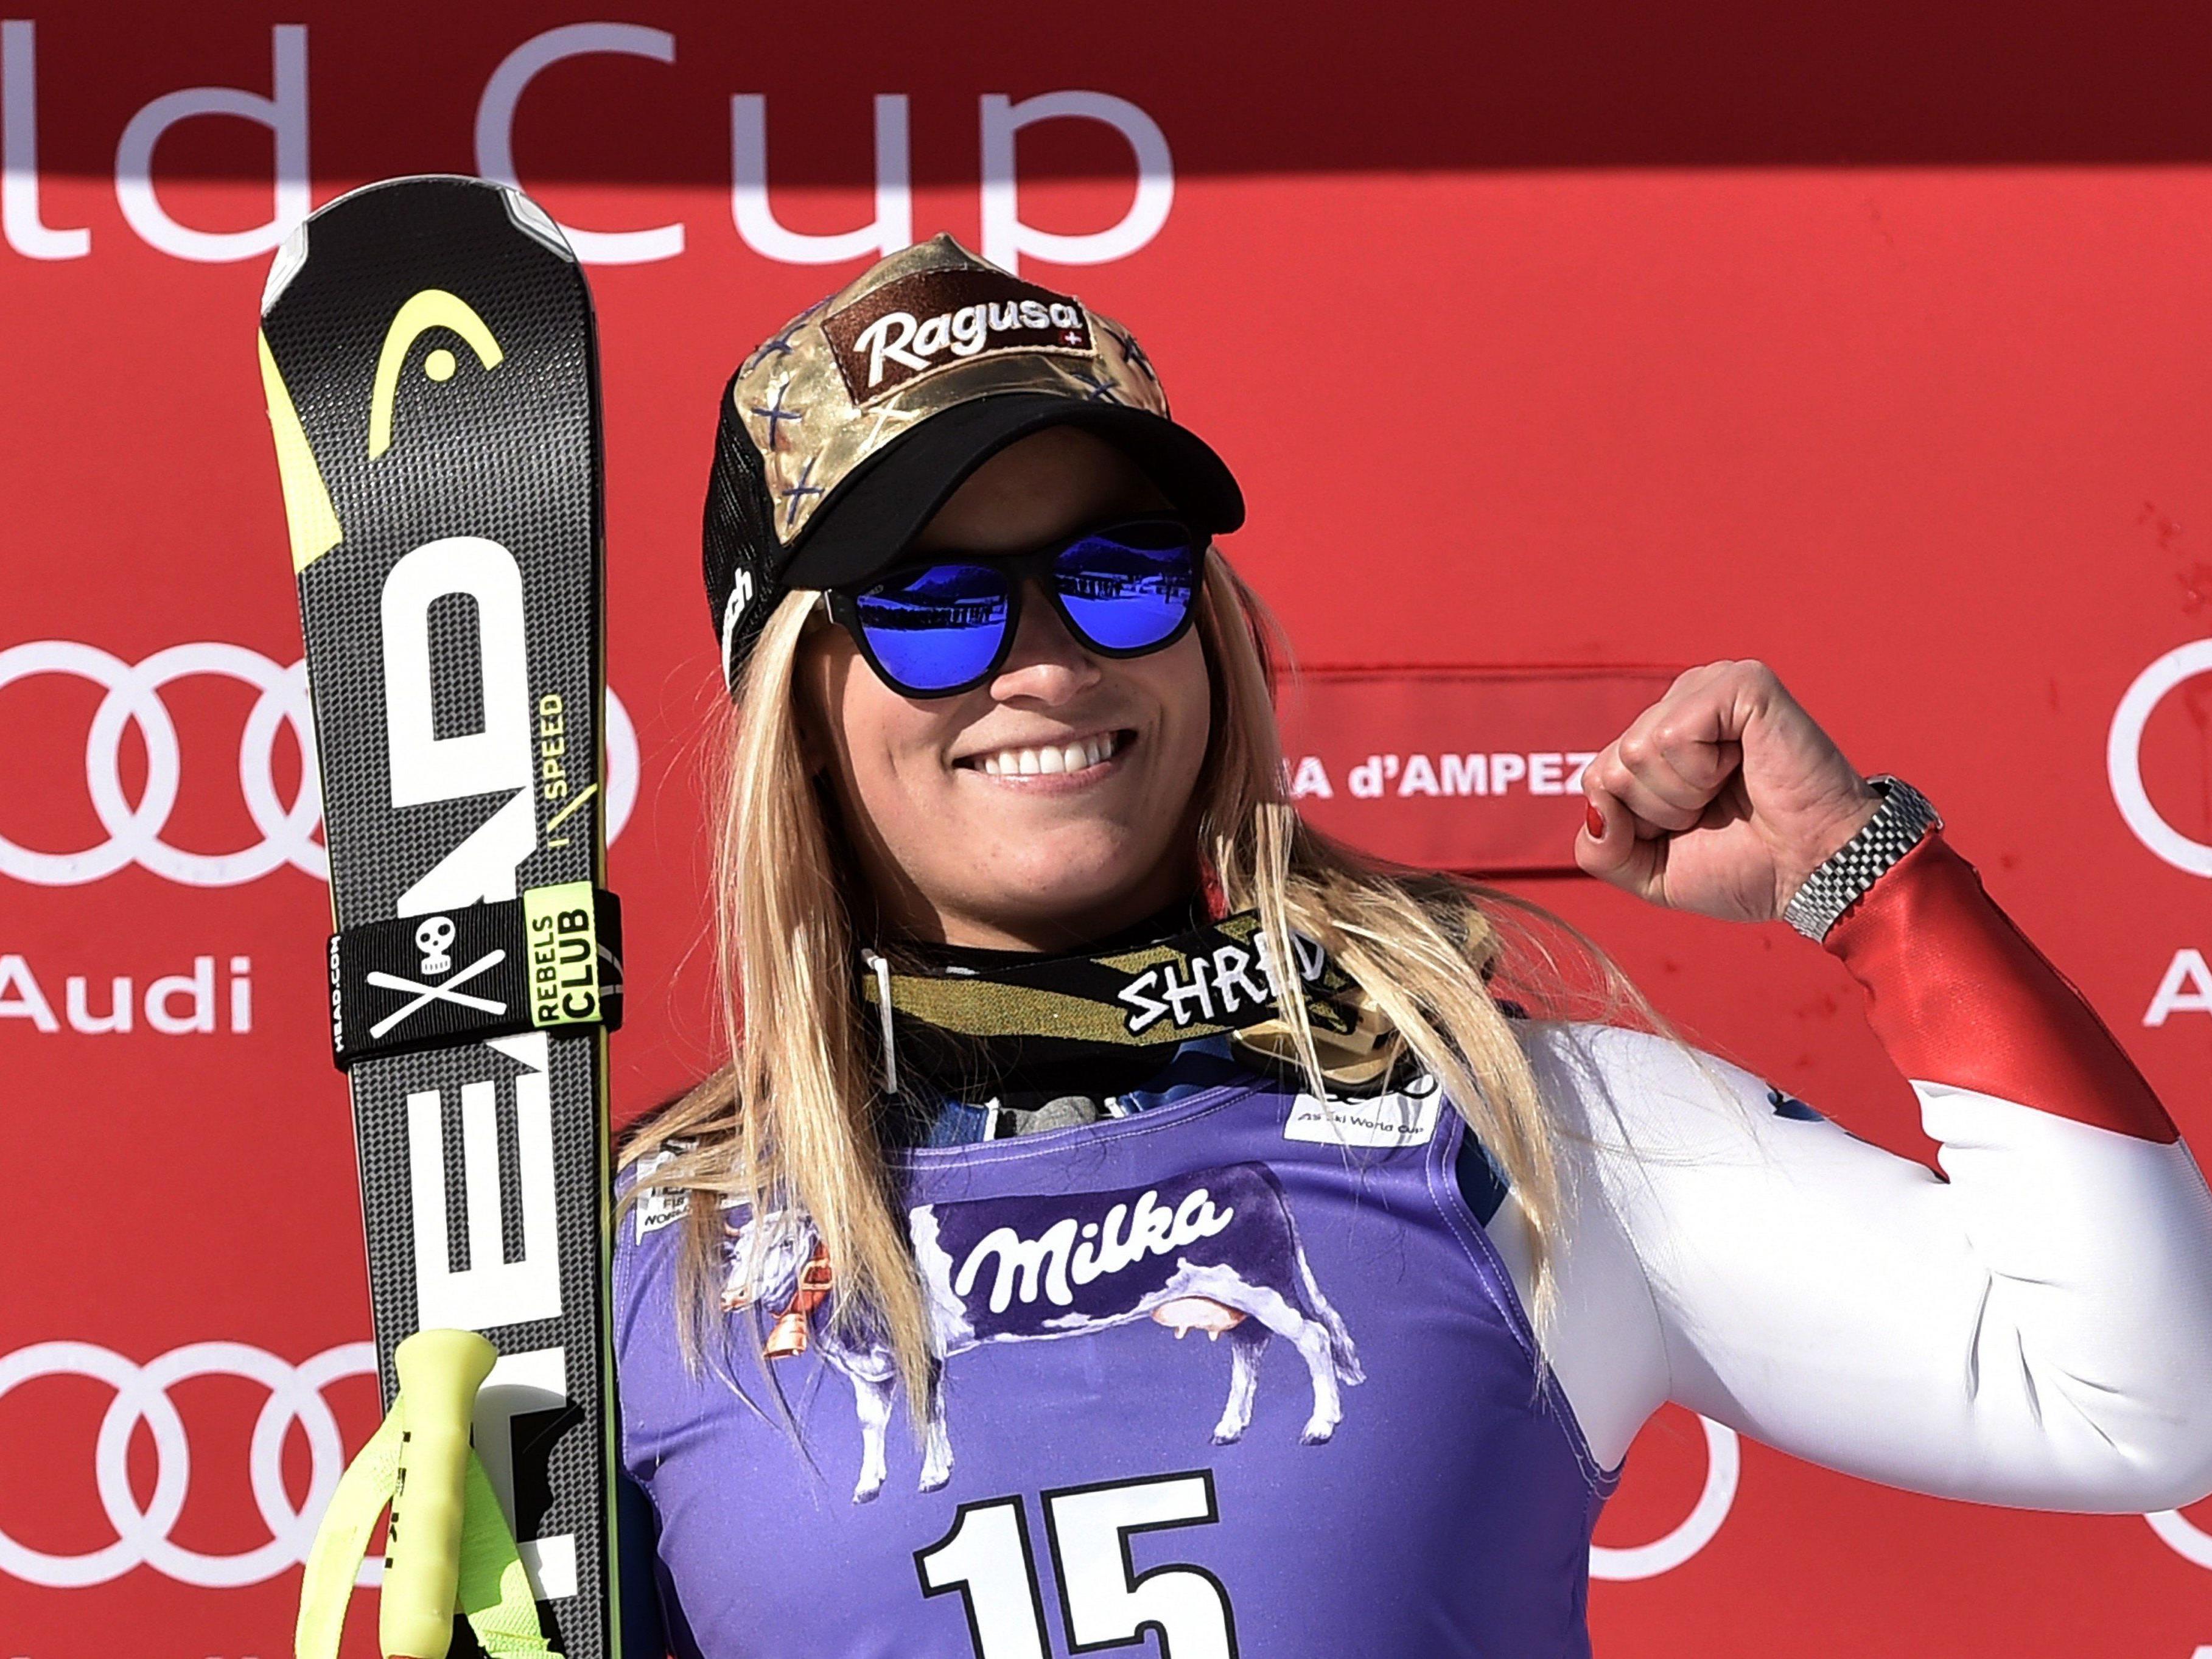 LIVE: Lara Gut startet als Favoritin in den Super-G der Ski-WM.